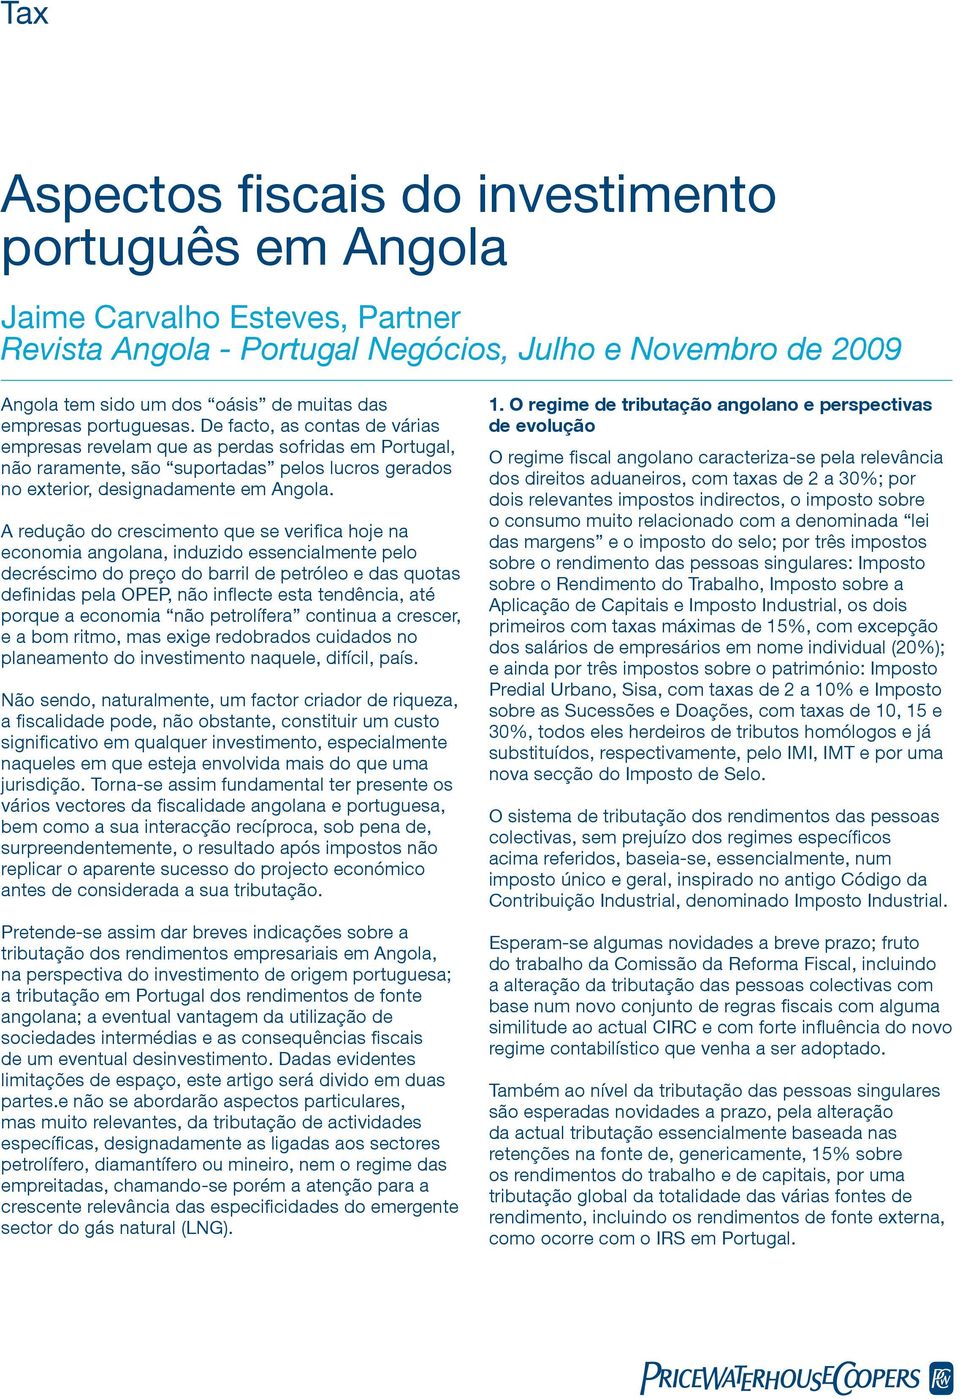 A redução do crescimento que se verifica hoje na economia angolana, induzido essencialmente pelo decréscimo do preço do barril de petróleo e das quotas definidas pela OPEP, não inflecte esta